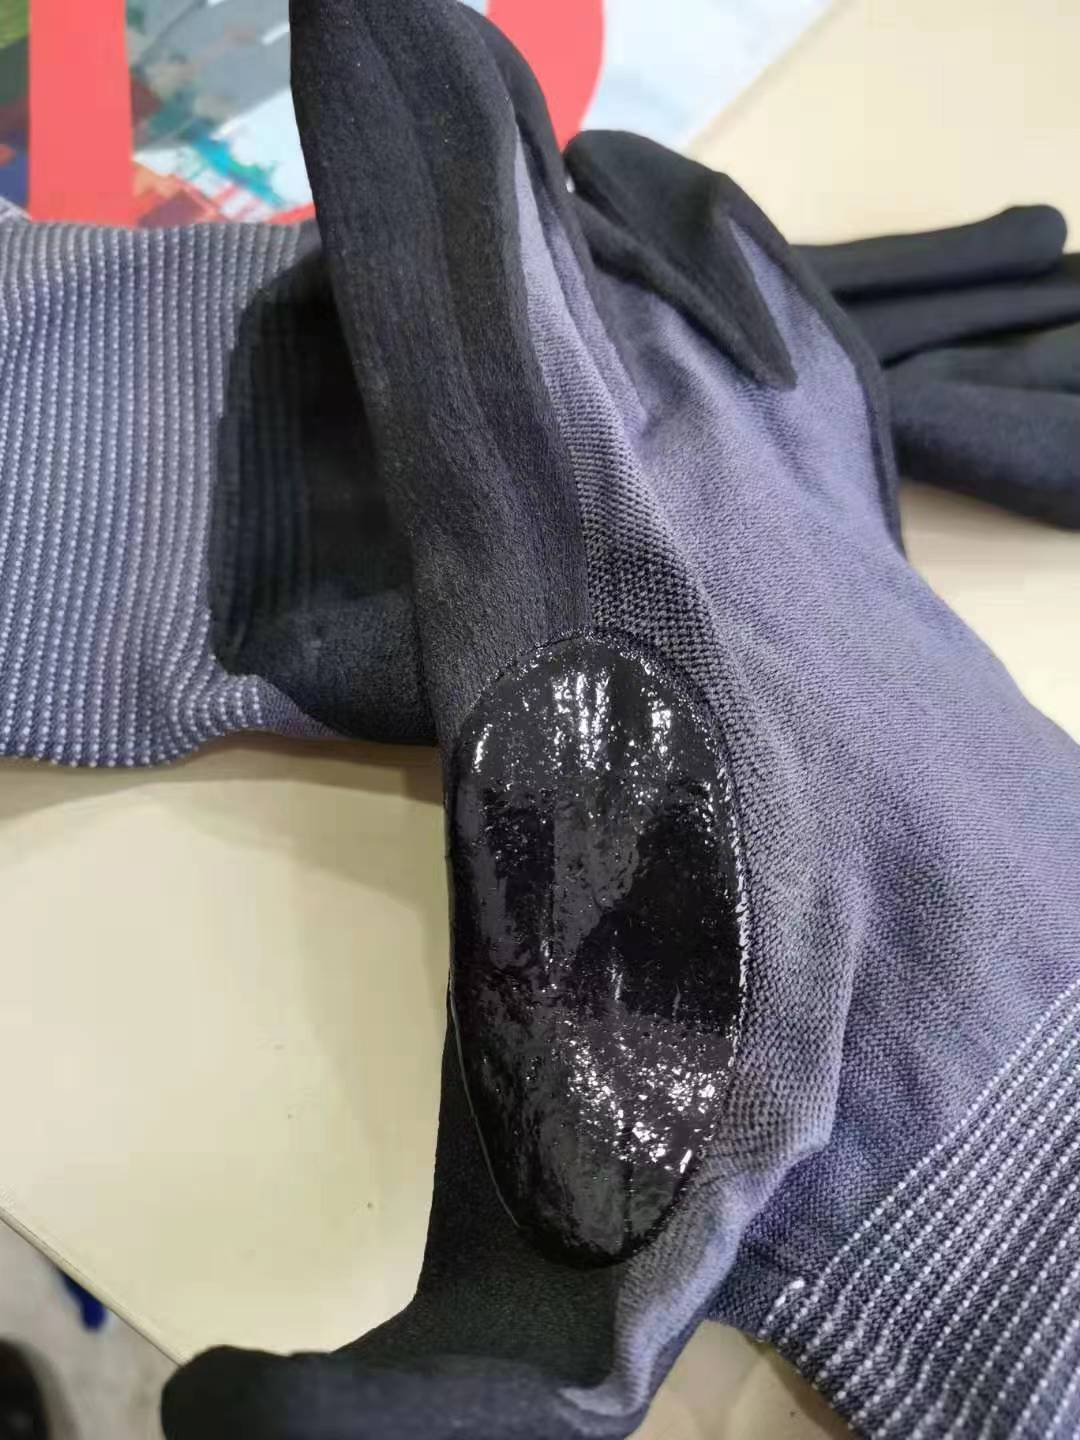 crotch glove machine